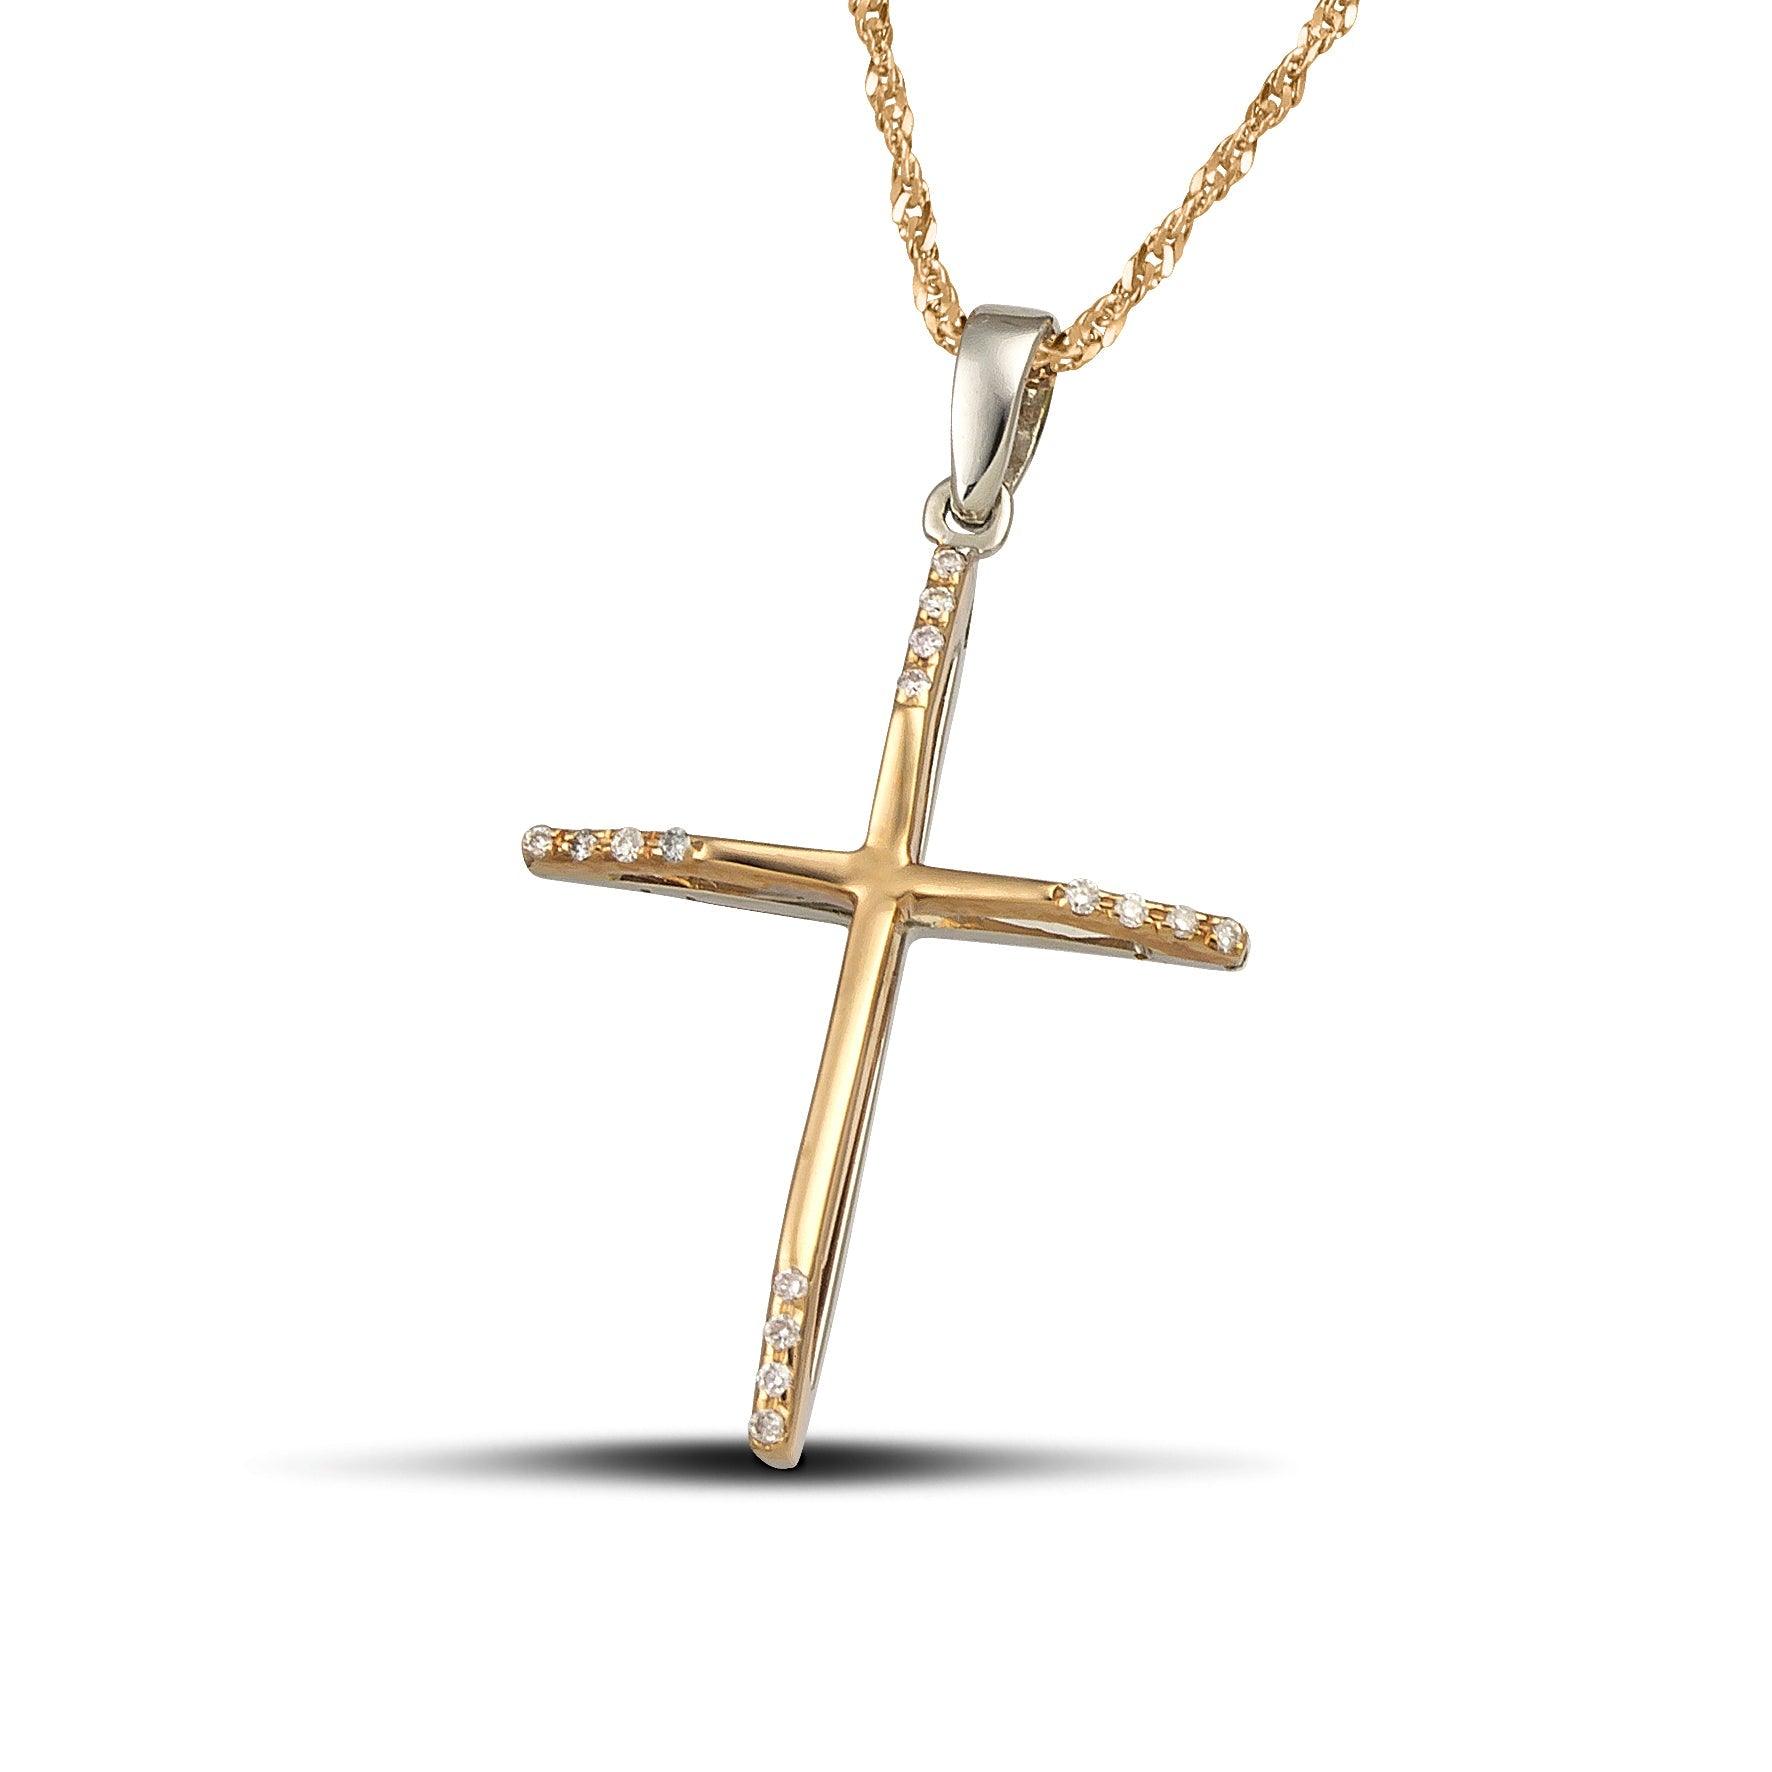 Γυναικείος σταυρός από χρυσό Κ18 με διαμάντια, διπλής όψης λευκόχρυσος και ροζ χρυσός. Διαθέτει στριφτή αλυσίδα.